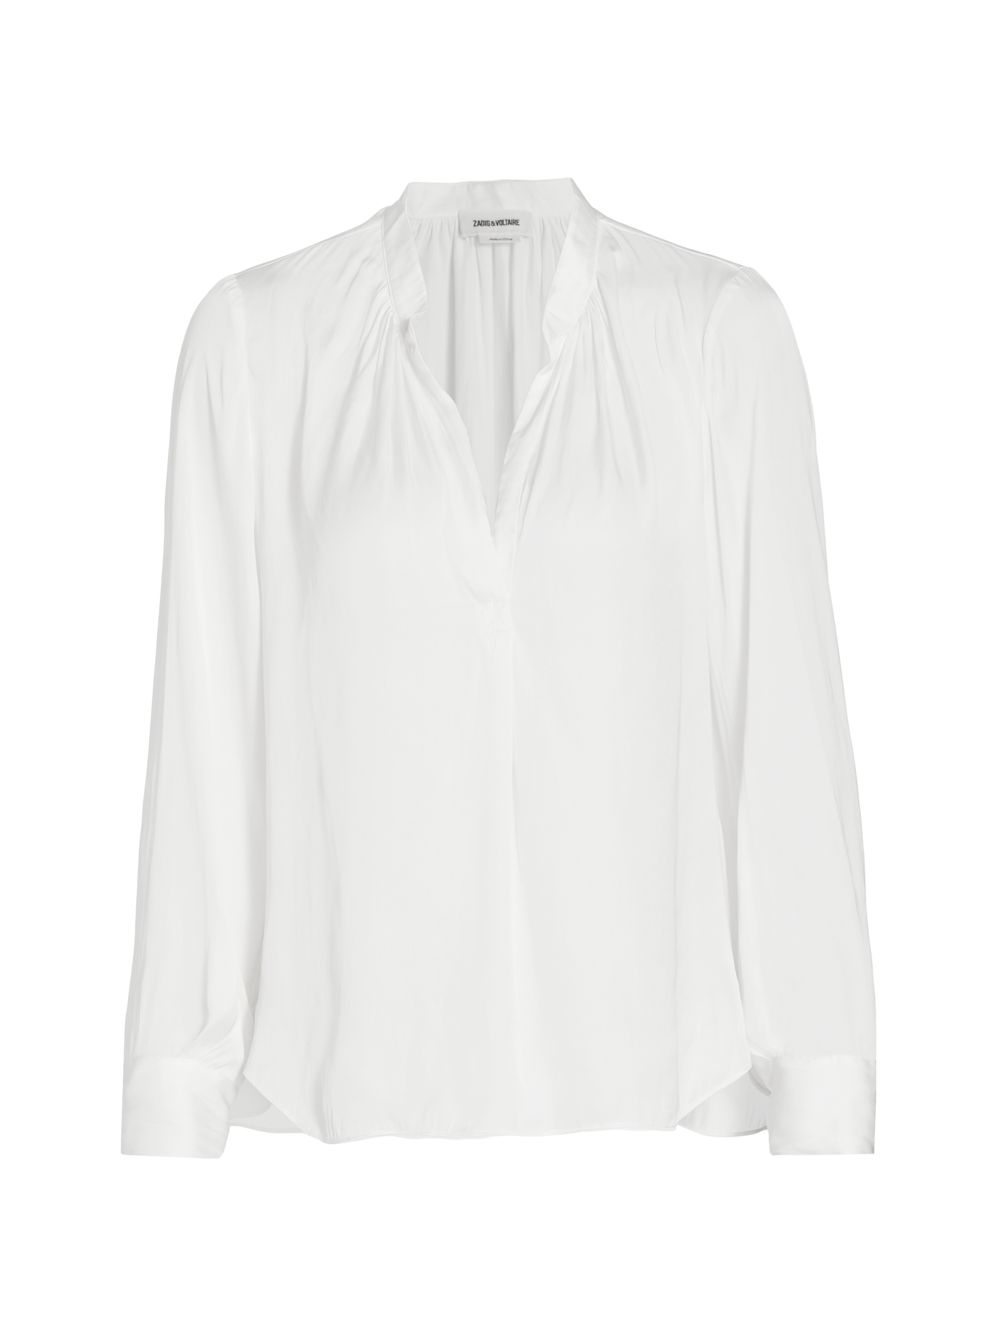 цена Атласная блузка с драпировкой Tink ZADIG & VOLTAIRE, экру